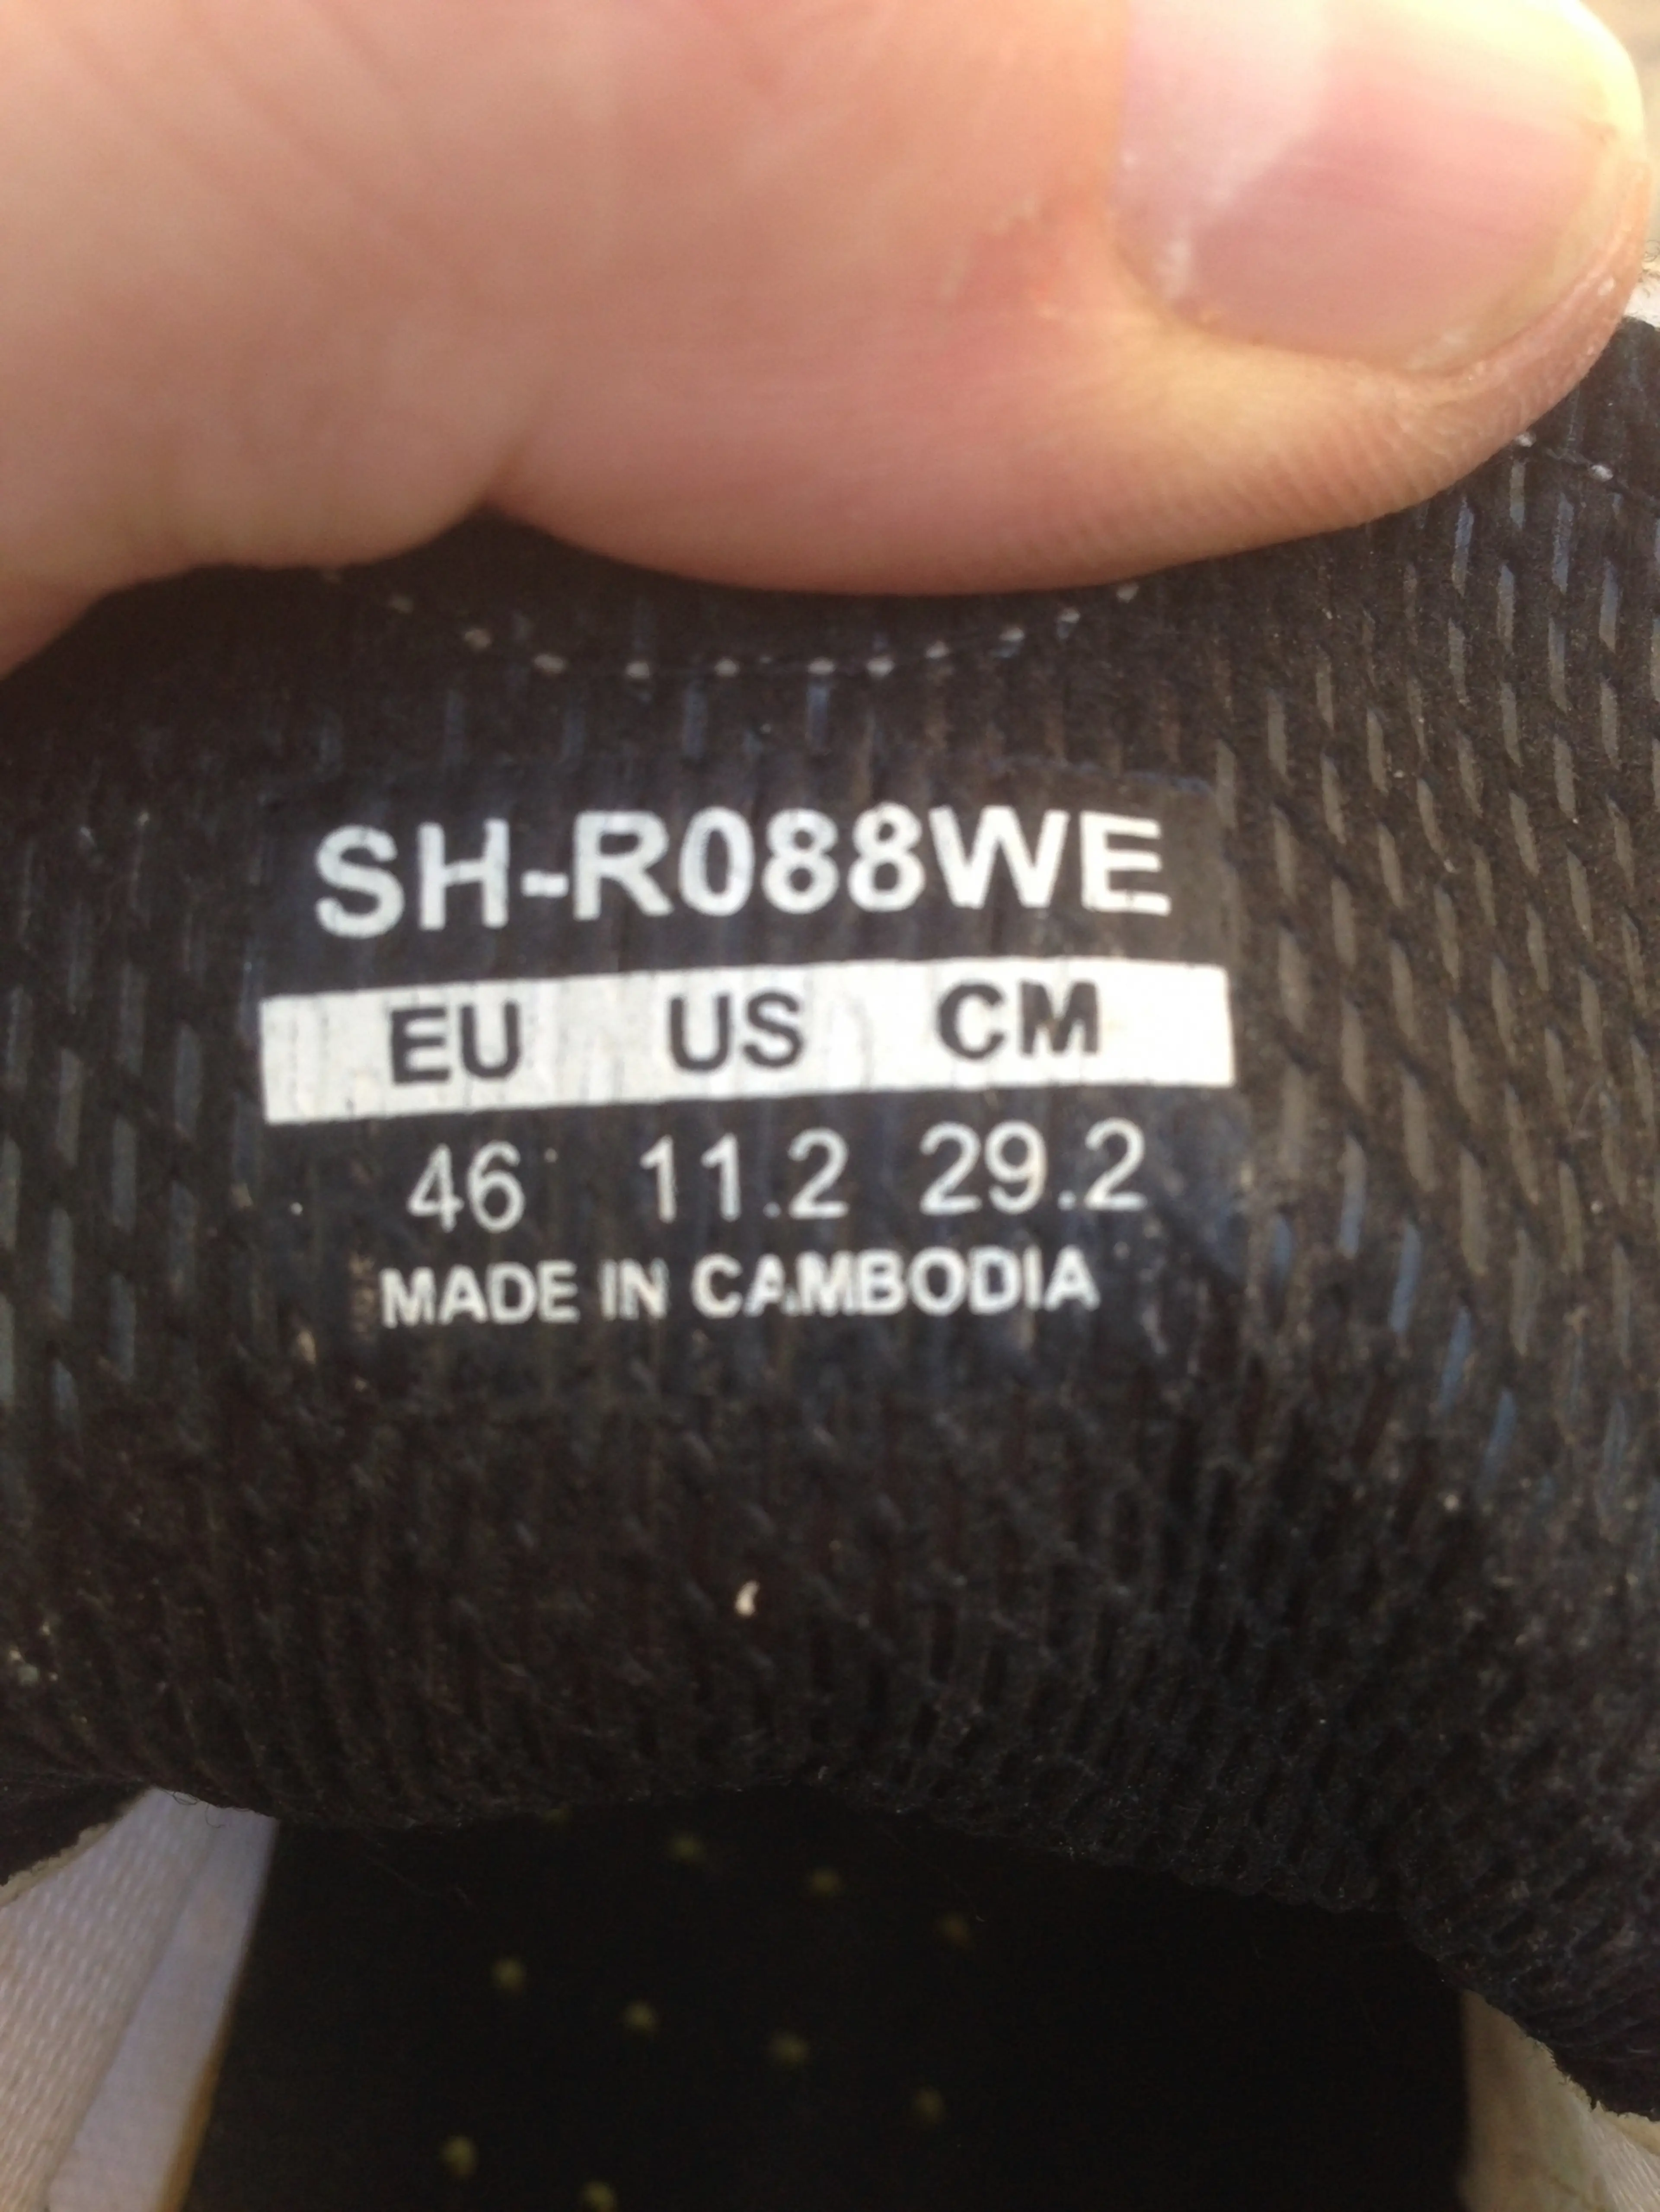 3. Pantofi Shimano SH-R088WE nr 46, 29.2 cm